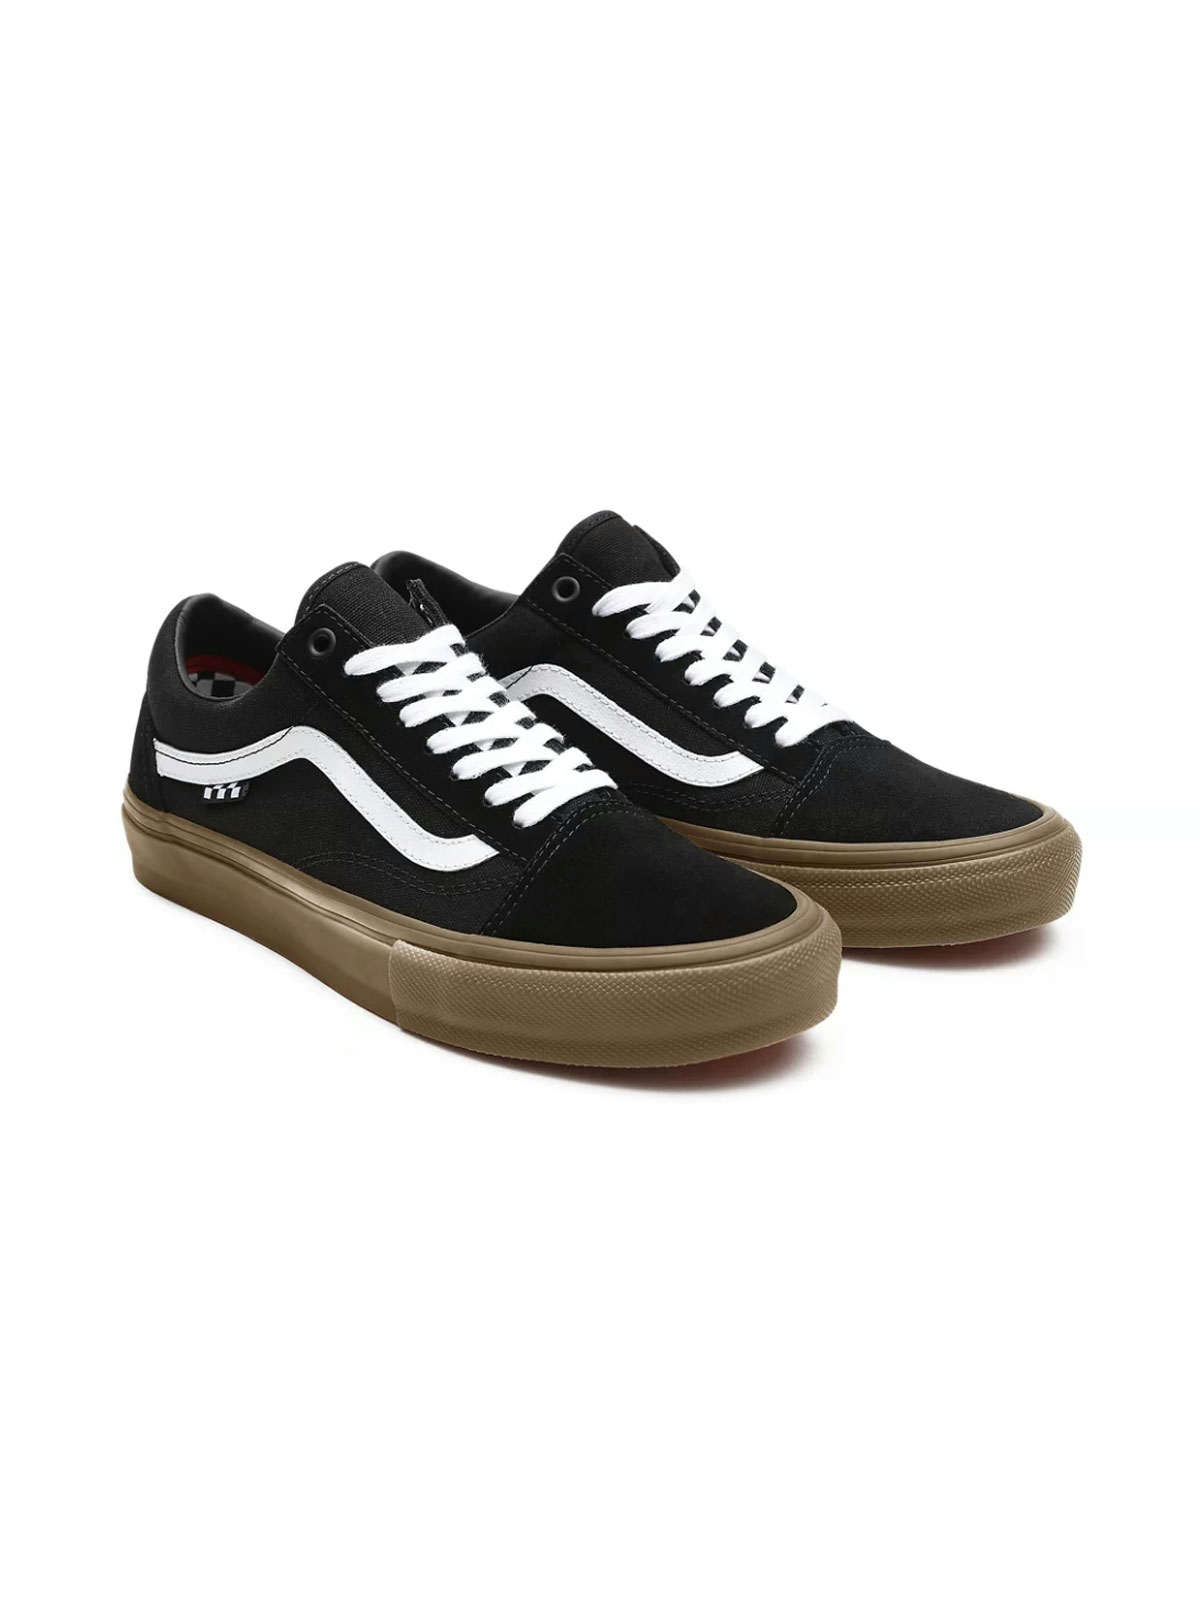 Vans Skate Old Skool Shoes Black/Gum 1